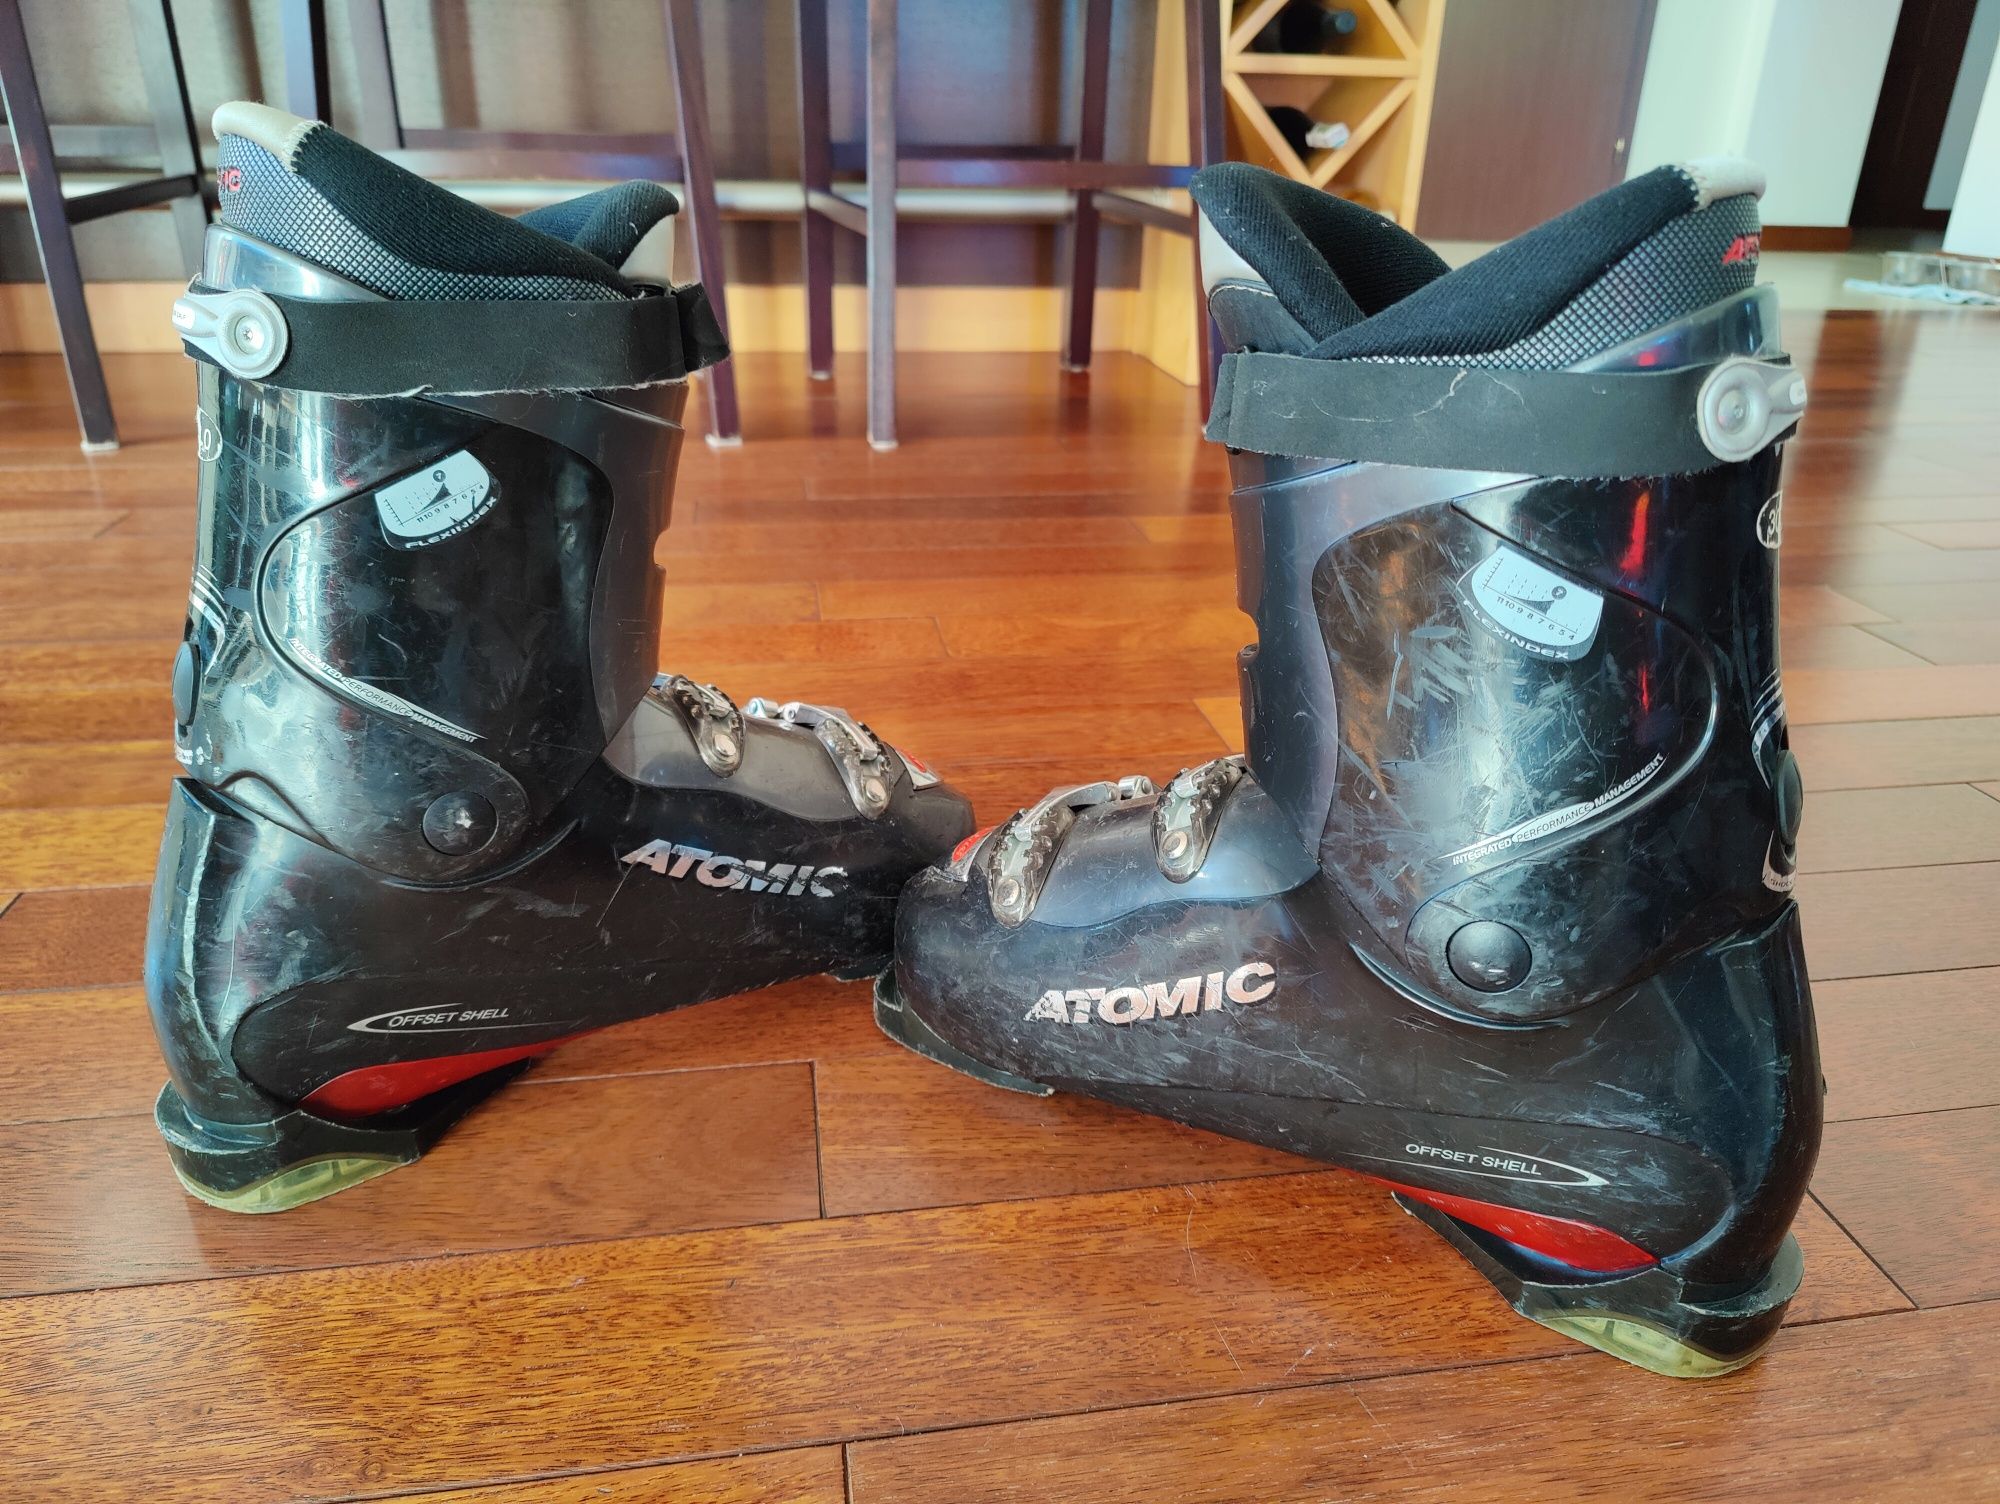 Buty narciarskie Atomic BetaCarv 6.55 używane, rozmiar 30.